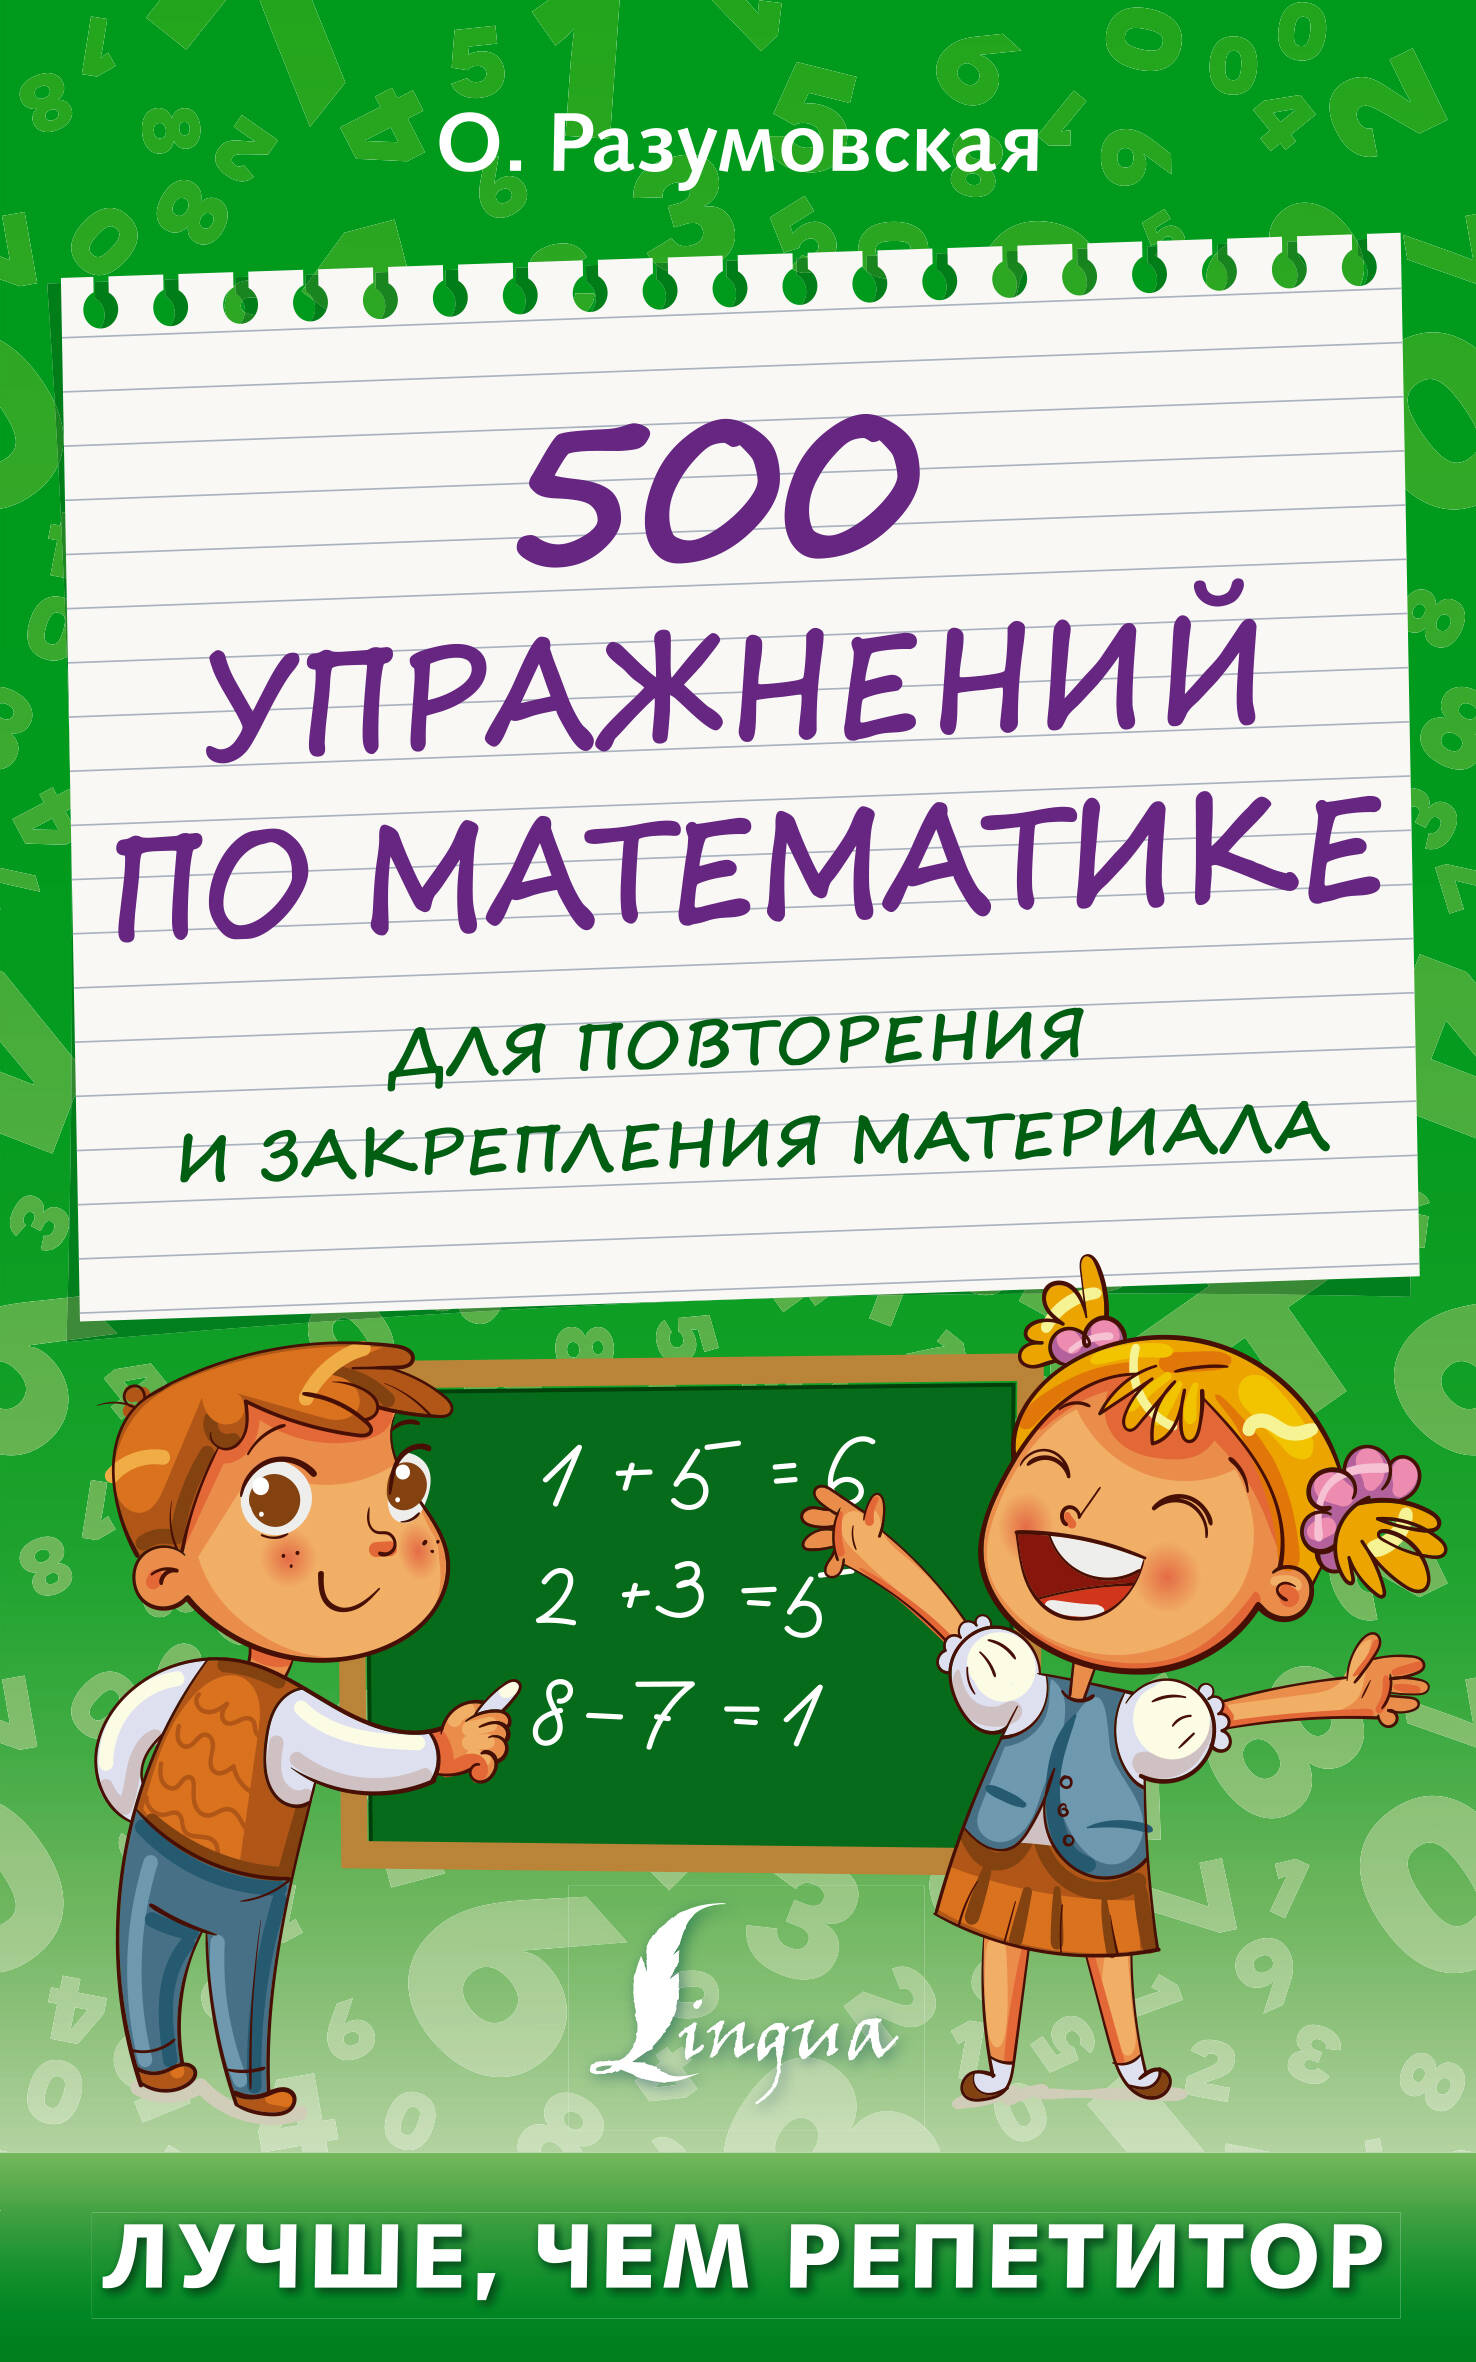 Разумовская Ольга Константиновна 500 упражнений по математике для повторения и закрепления материала